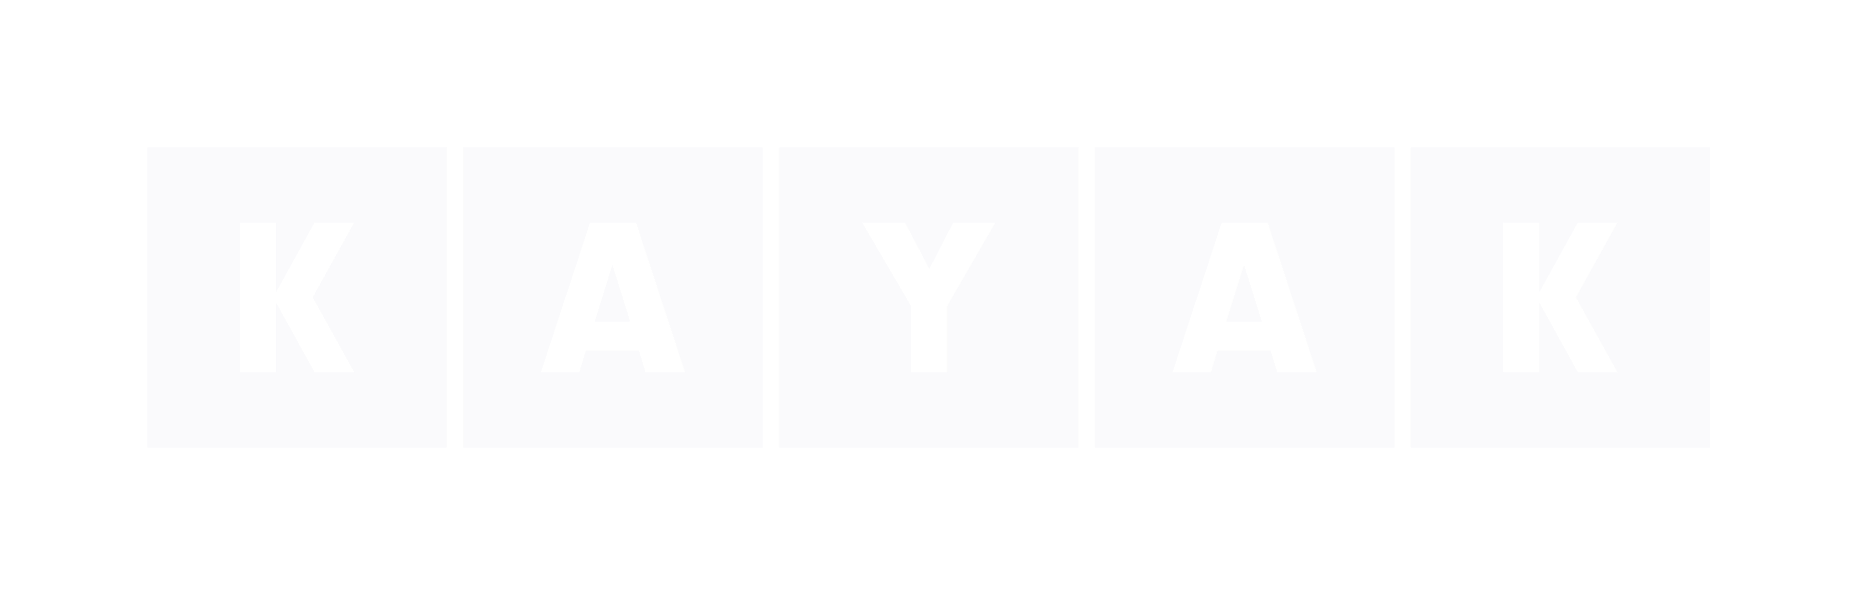 Kayak.com